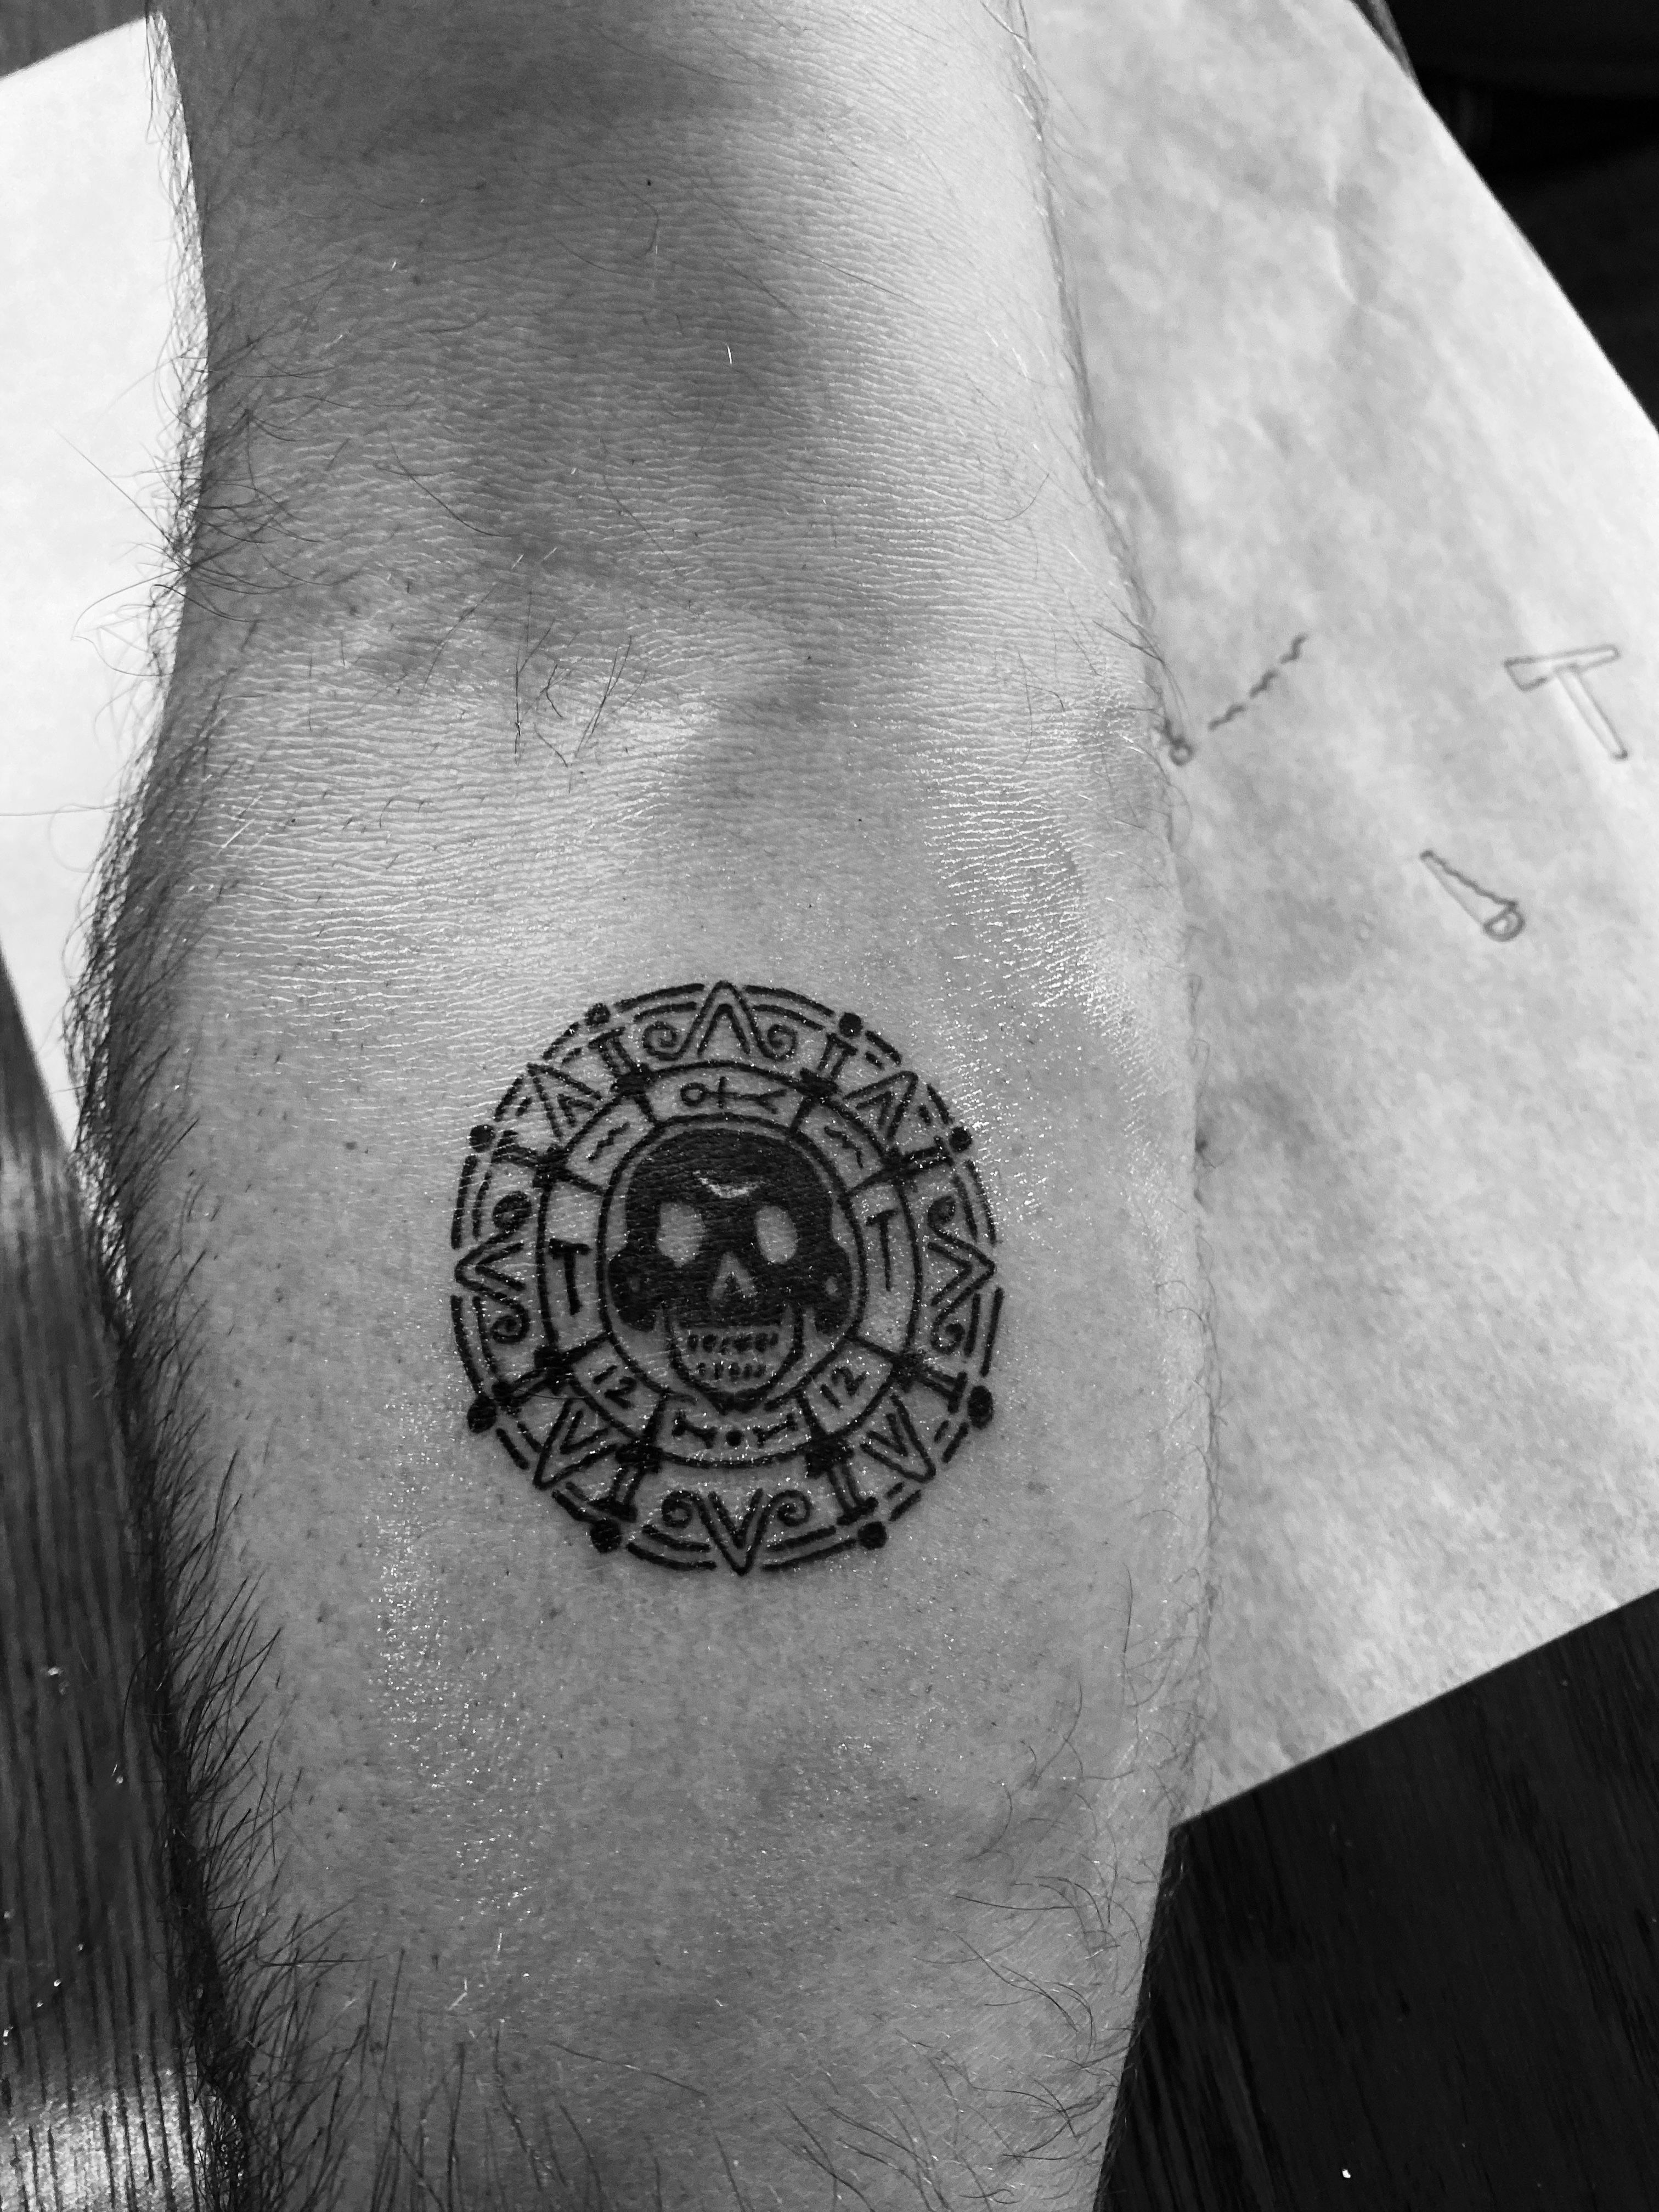 Tattoo uploaded by Steja • Lithuanian Litas coin 😍 Instagram: @nikita. tattoo #tattooartist #tattooart #blackworktattoo #blackwork #lineworktattoo  #LineworkTattoos #linework #thinlinetattoo #fineline #dotwork  #dotworktattoo #minimalism #minimalistic ...